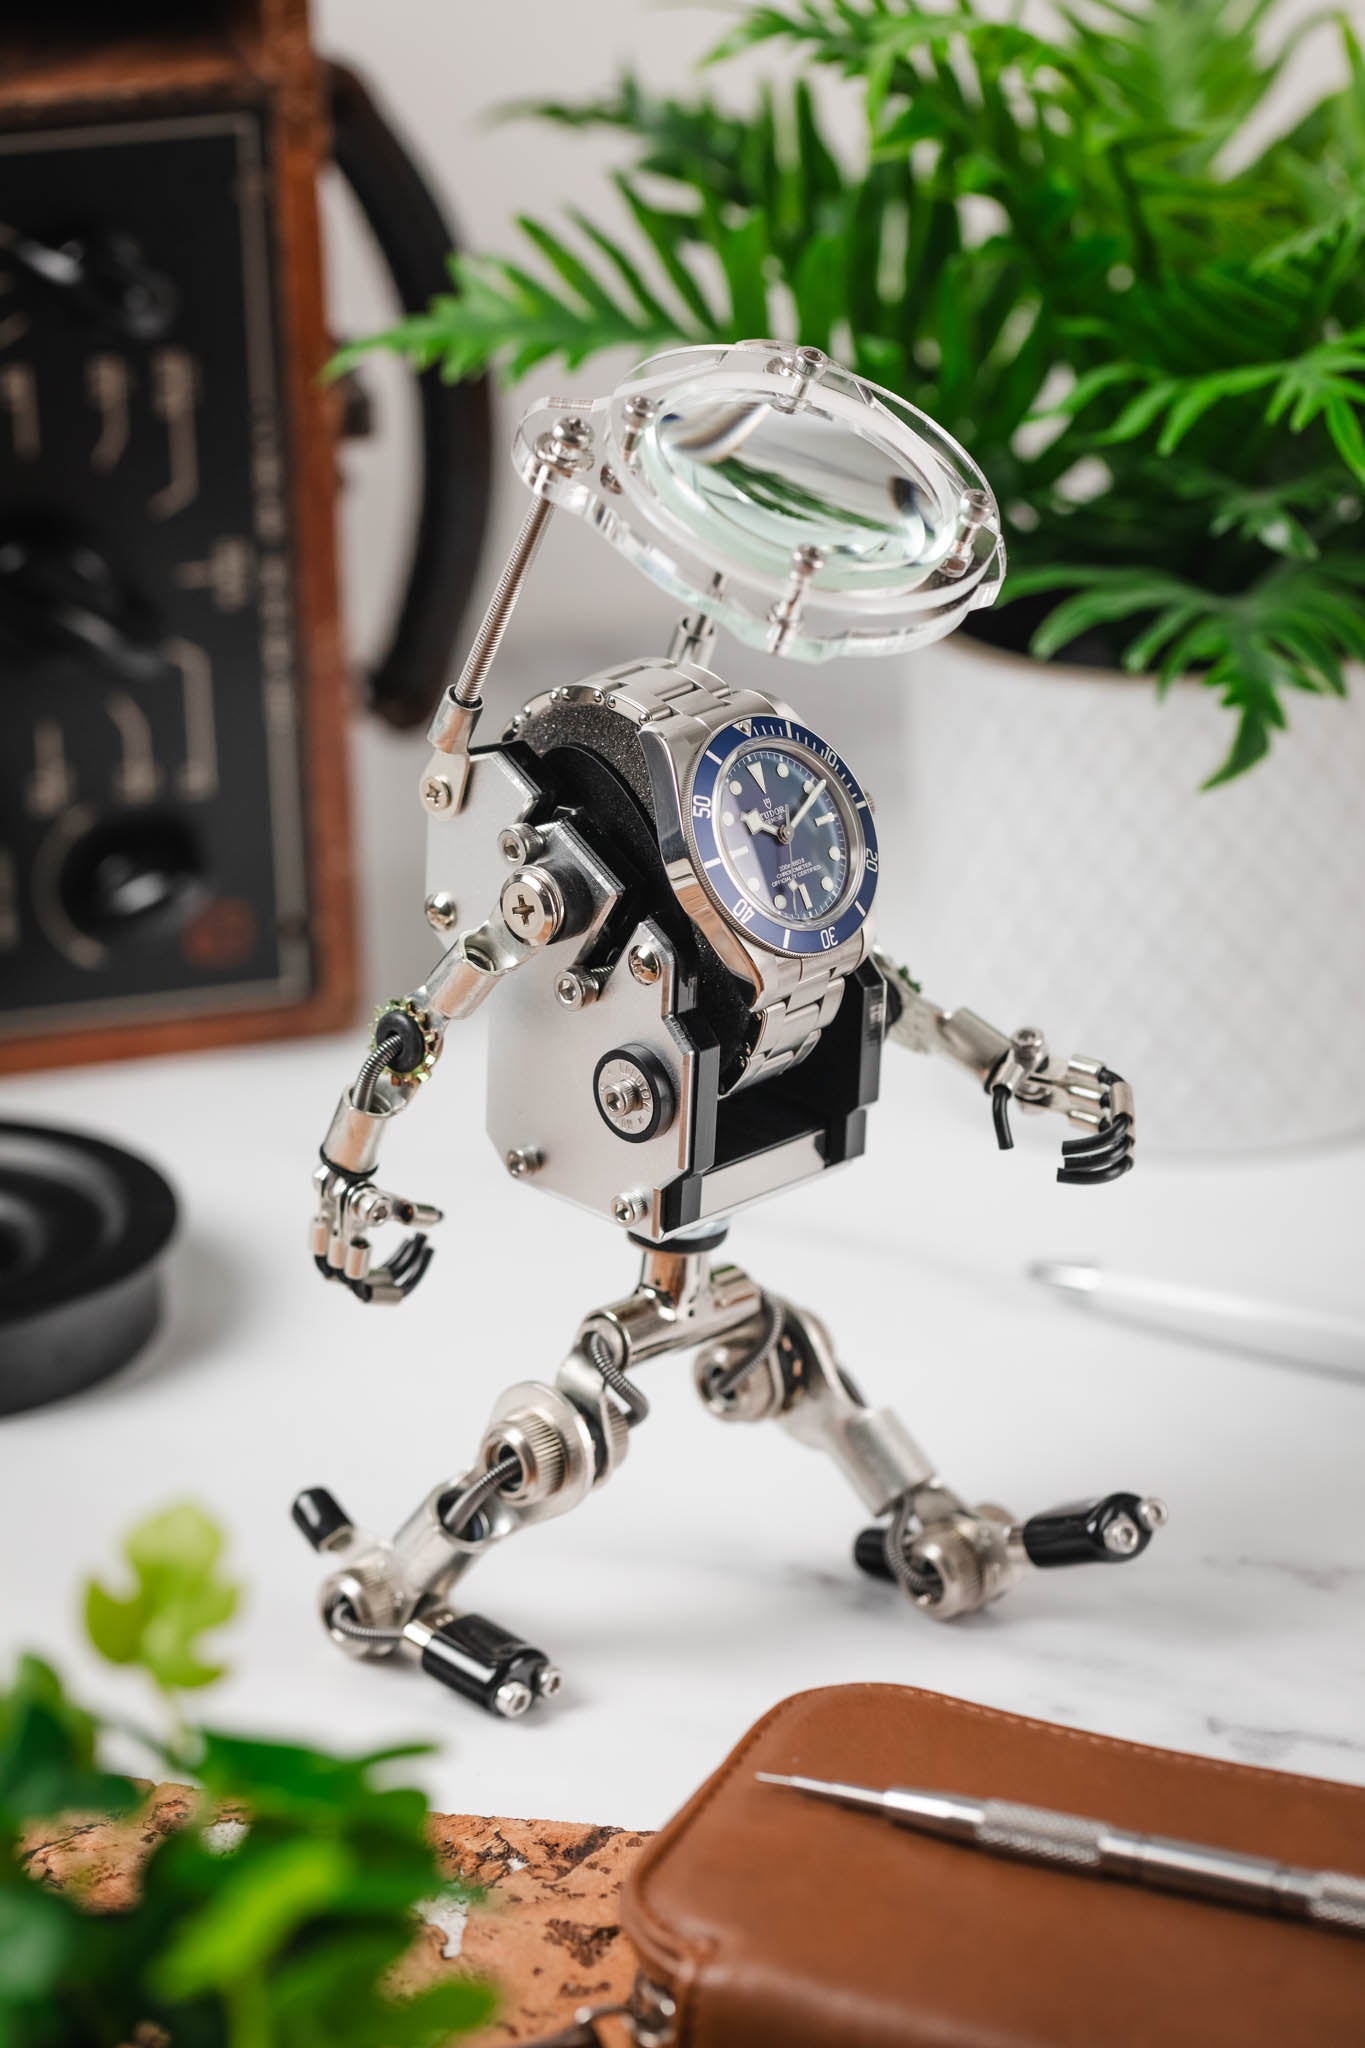 ROBOTOYS - BOLT - Watch holder